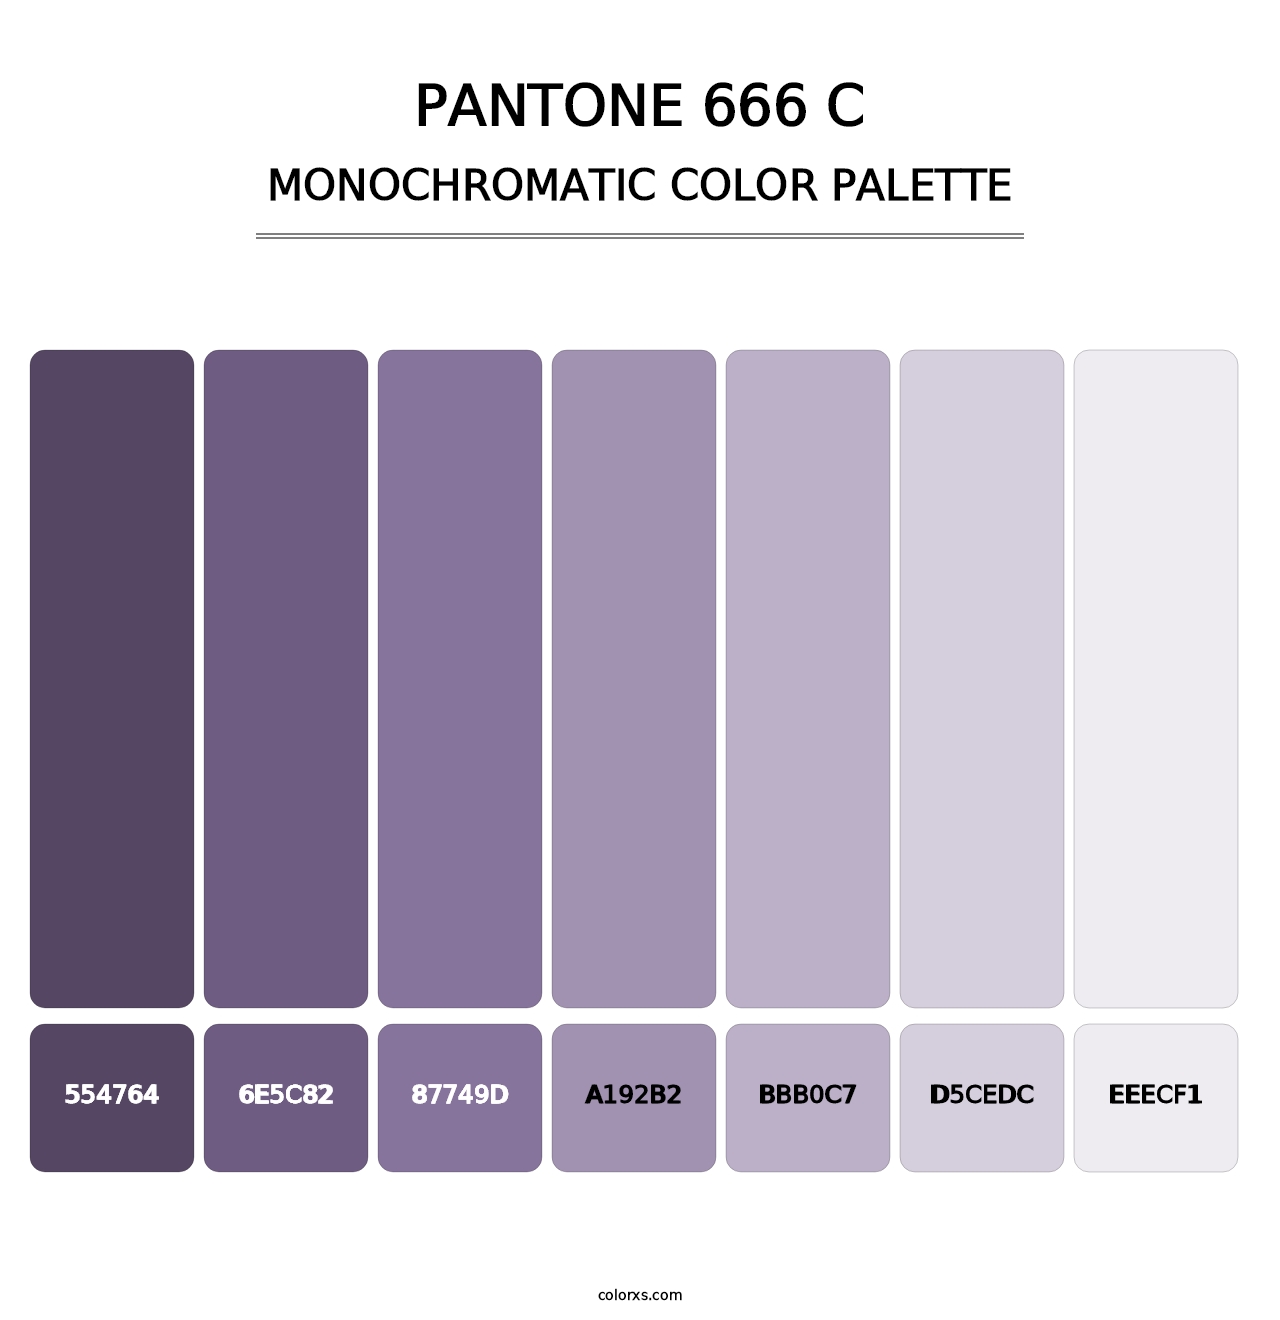 PANTONE 666 C - Monochromatic Color Palette